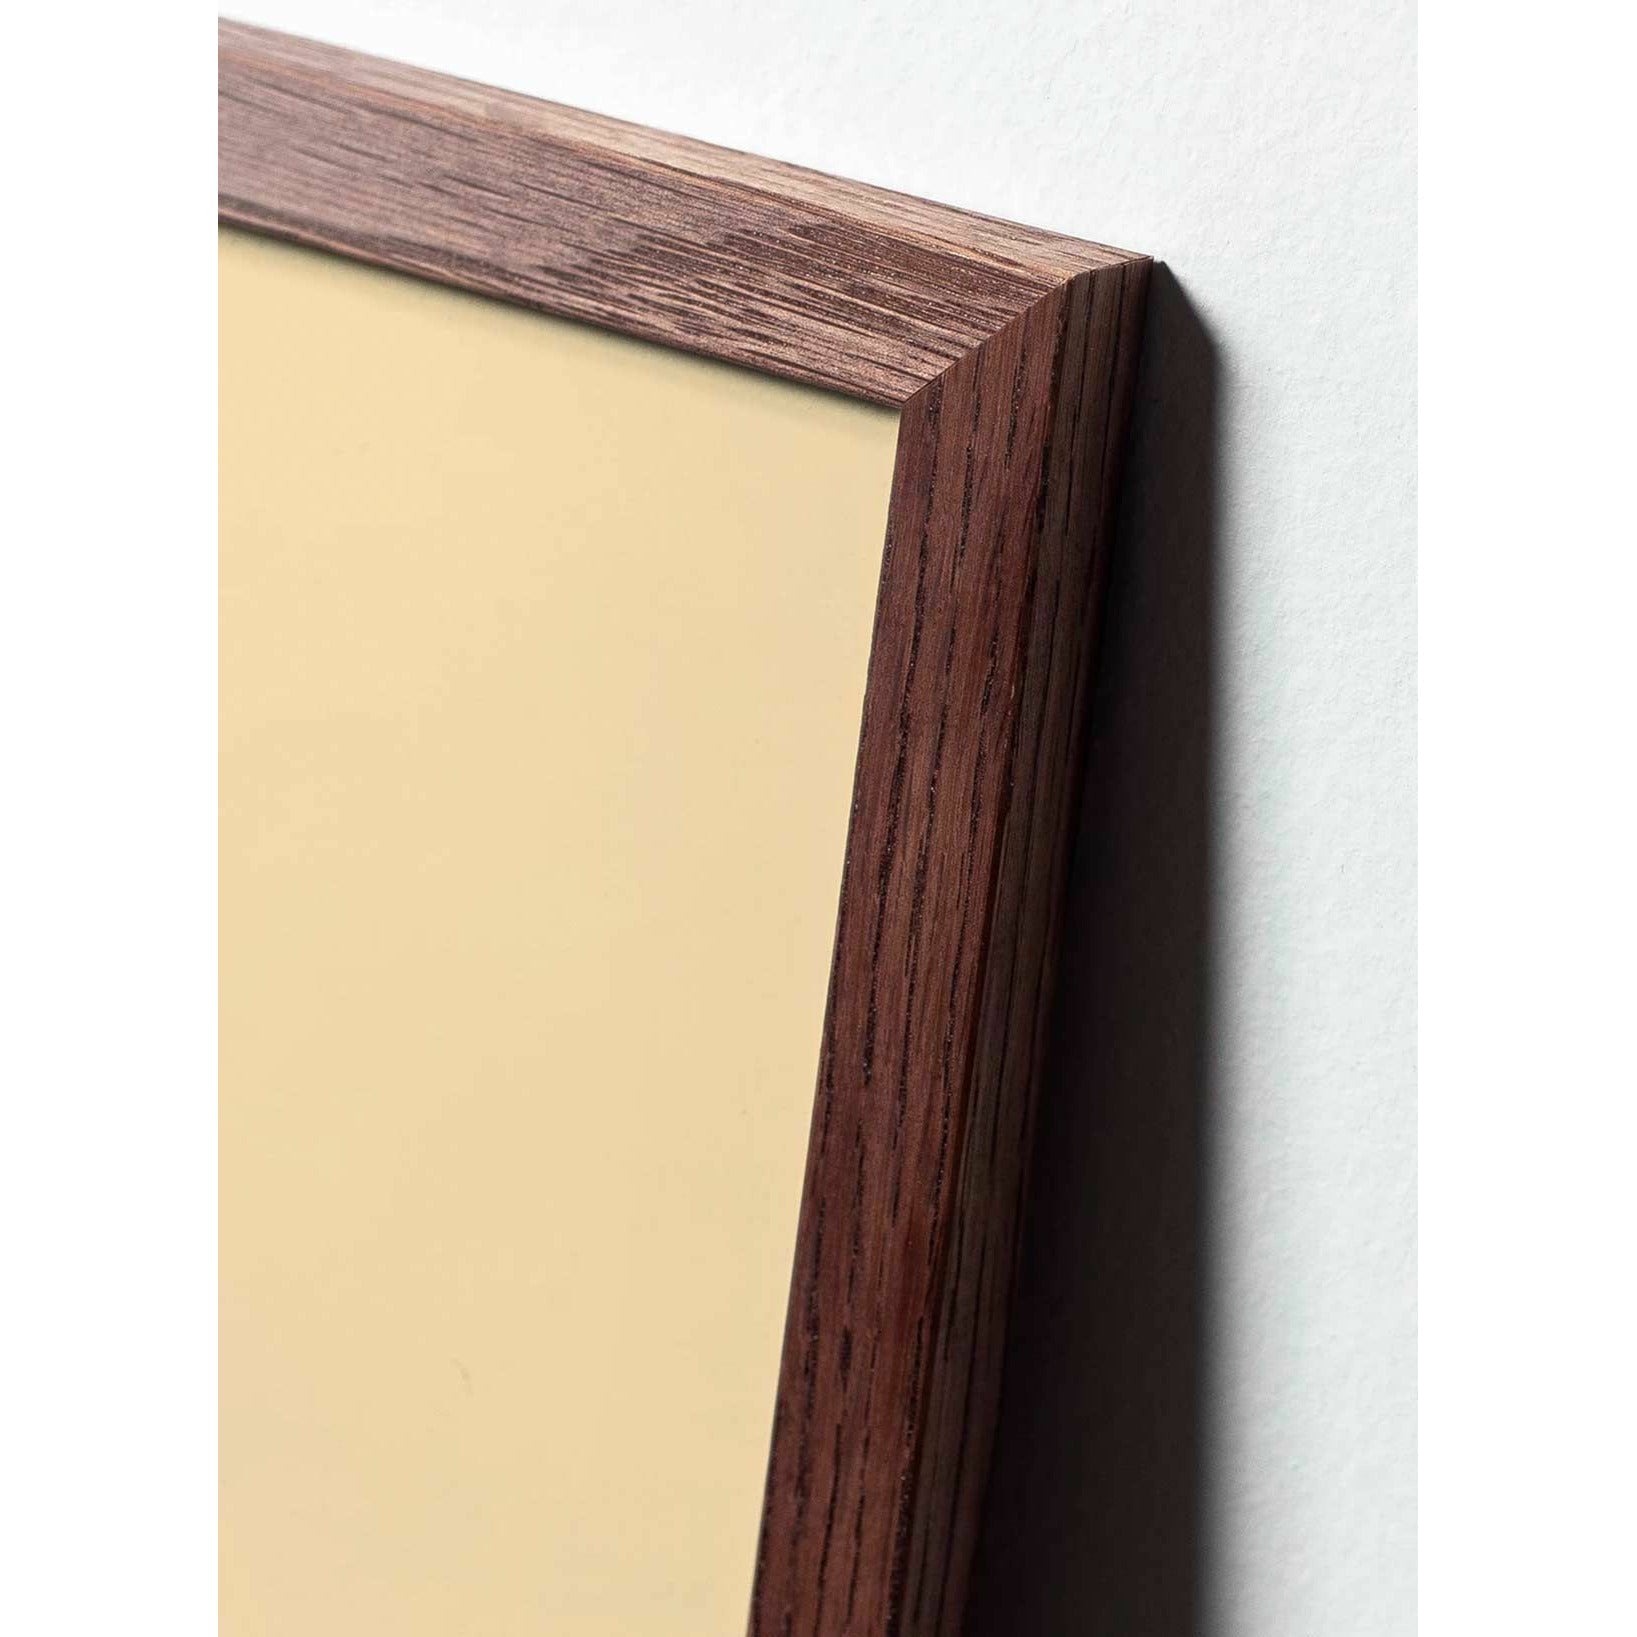 Póster clásico de cono de pino de creación, marco hecho de madera oscura 50x70 cm, fondo negro